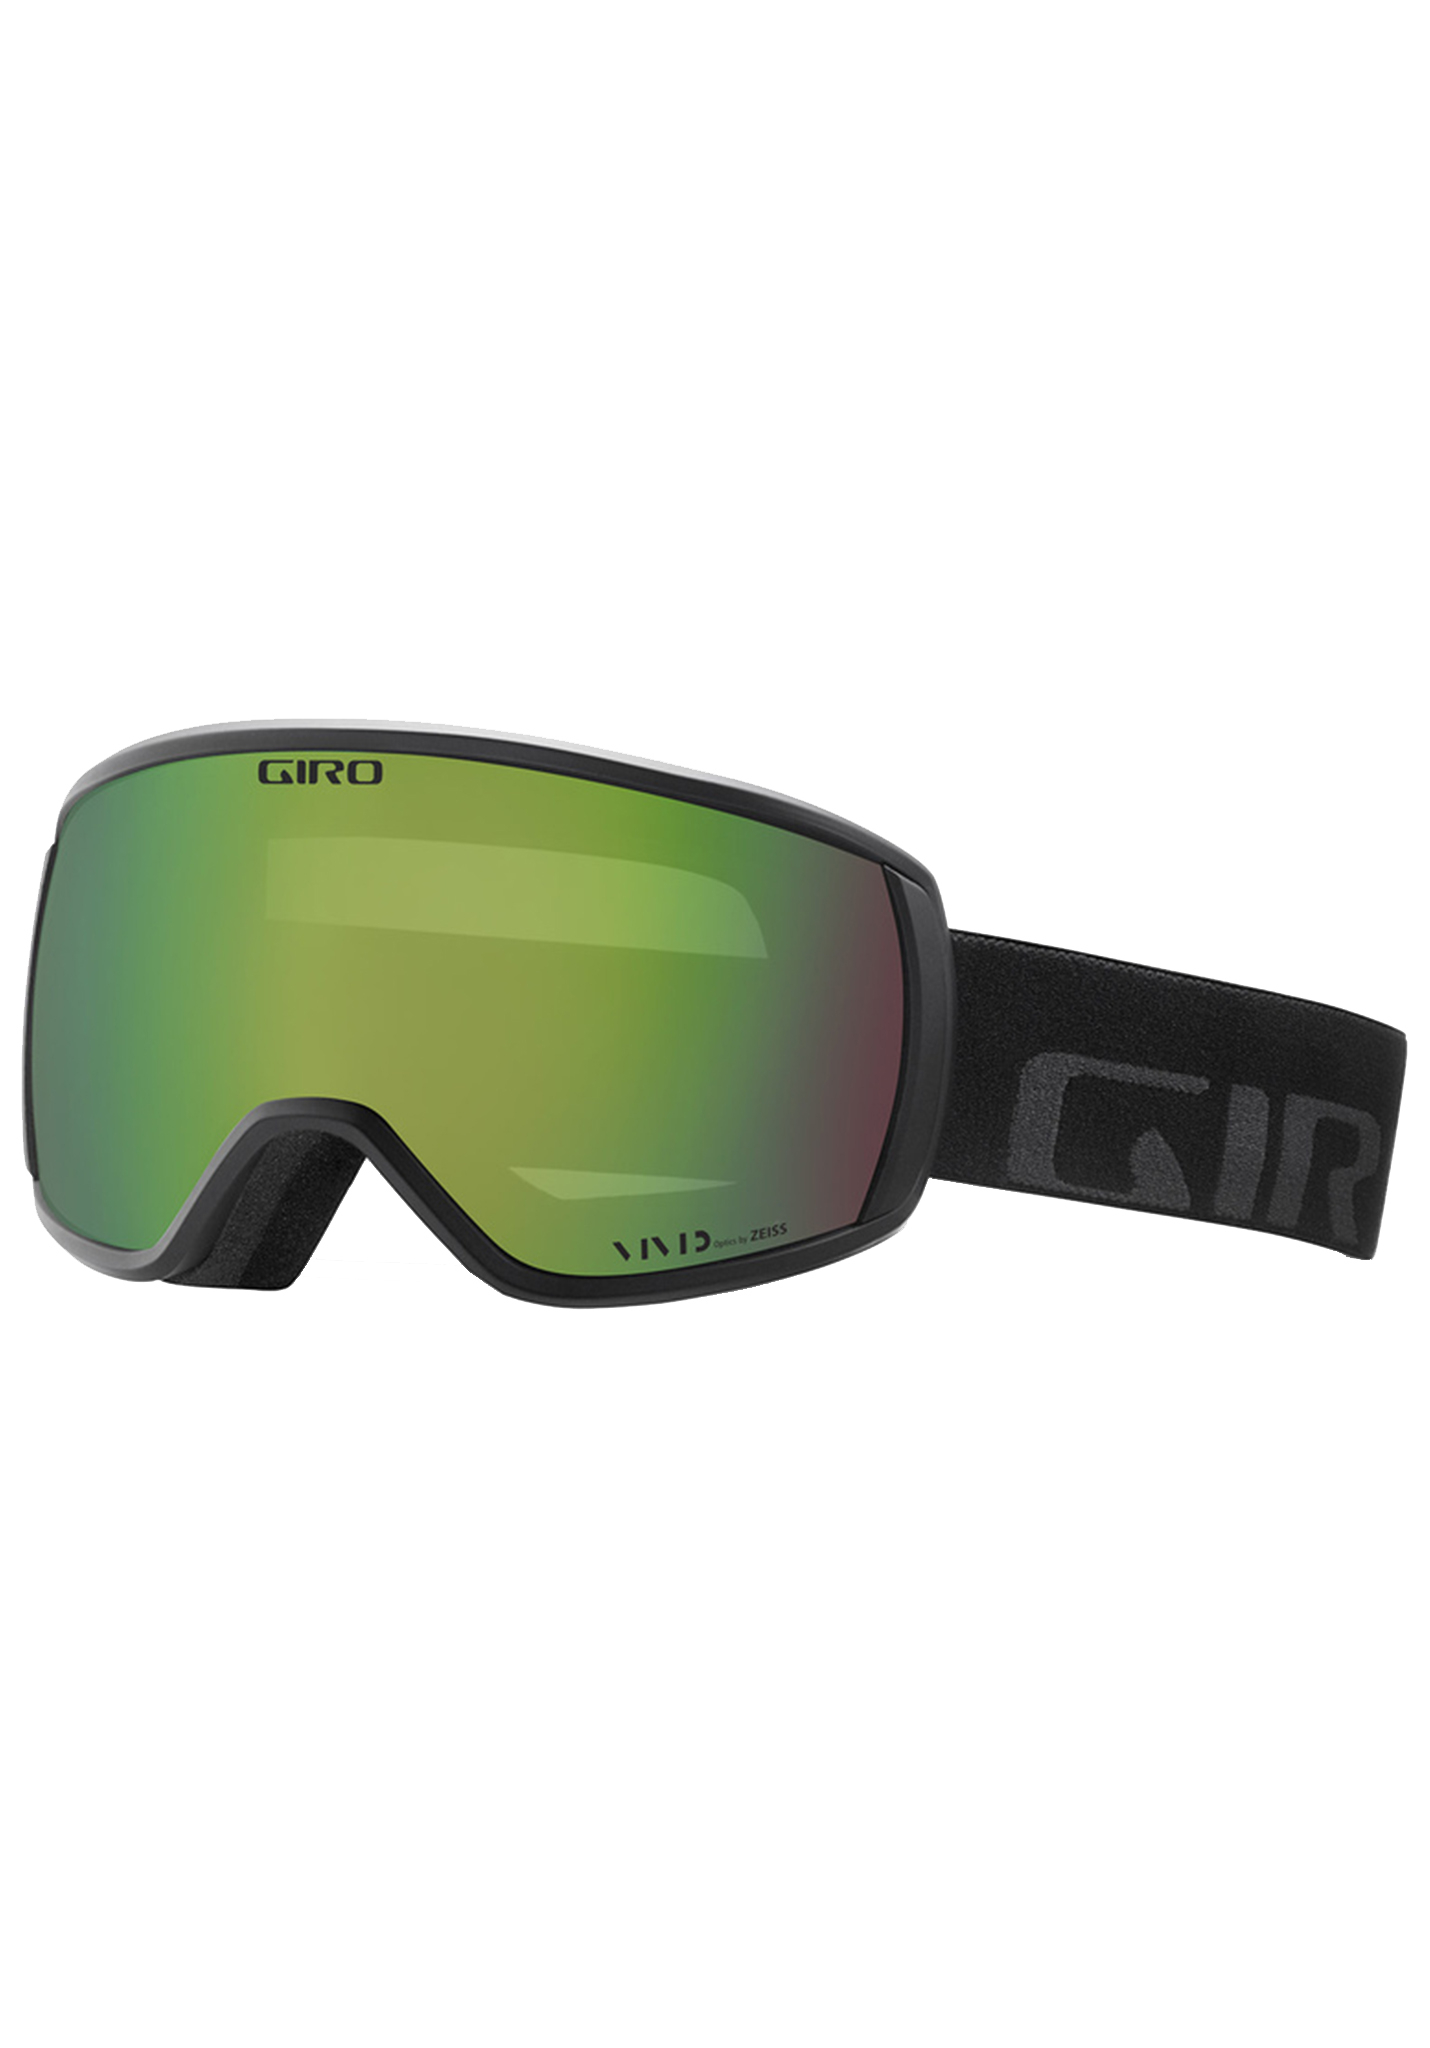 Giro Balance Snowboardbrillen schwarze wortmarke/lebendiger smaragd One Size